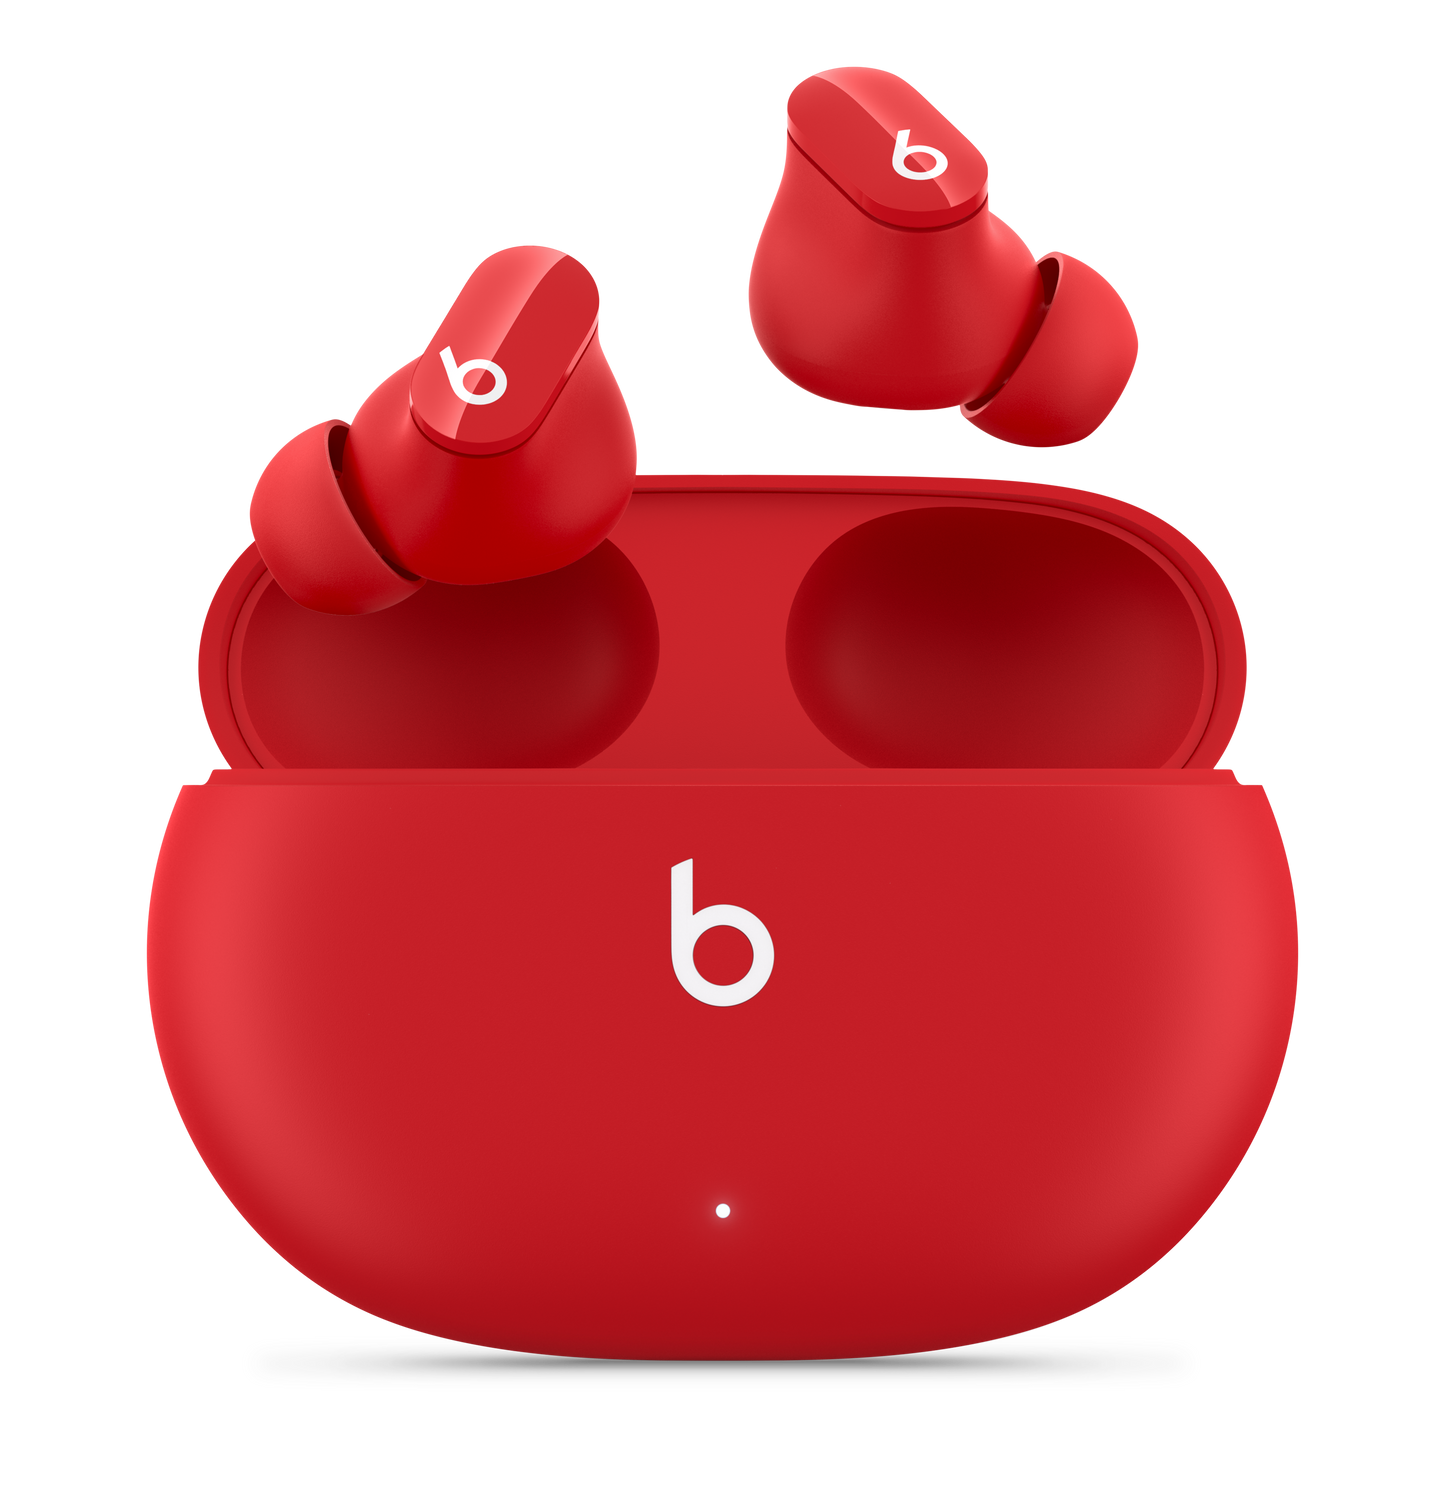 Compartir audio con los AirPods o audífonos Beats - Soporte técnico de Apple